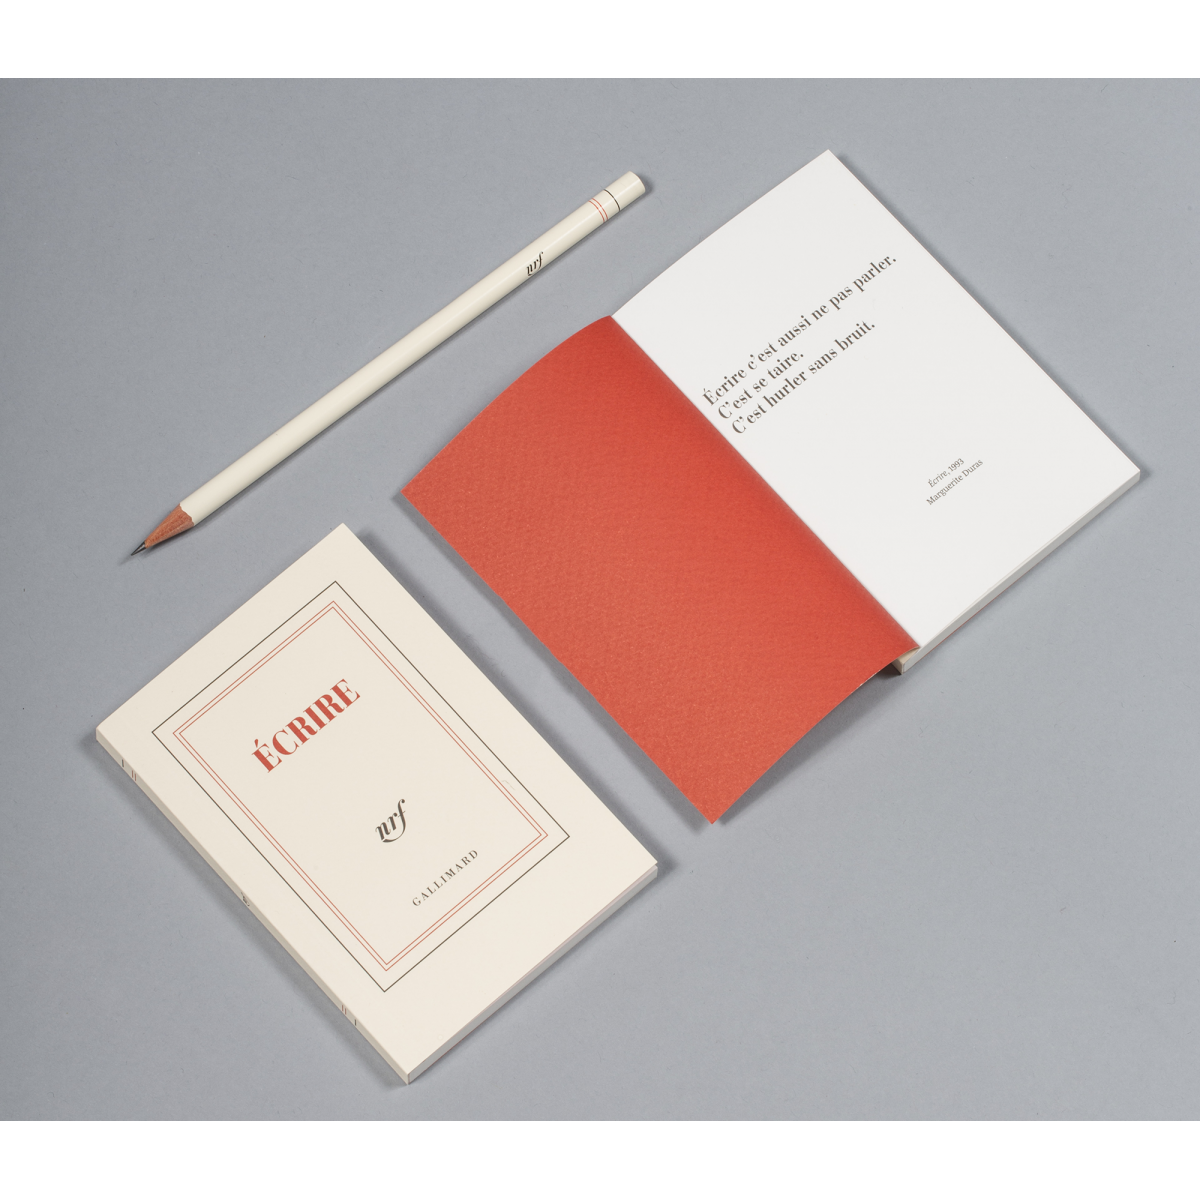 Écrire » (carnet poche de papeterie) - Galerie Gallimard